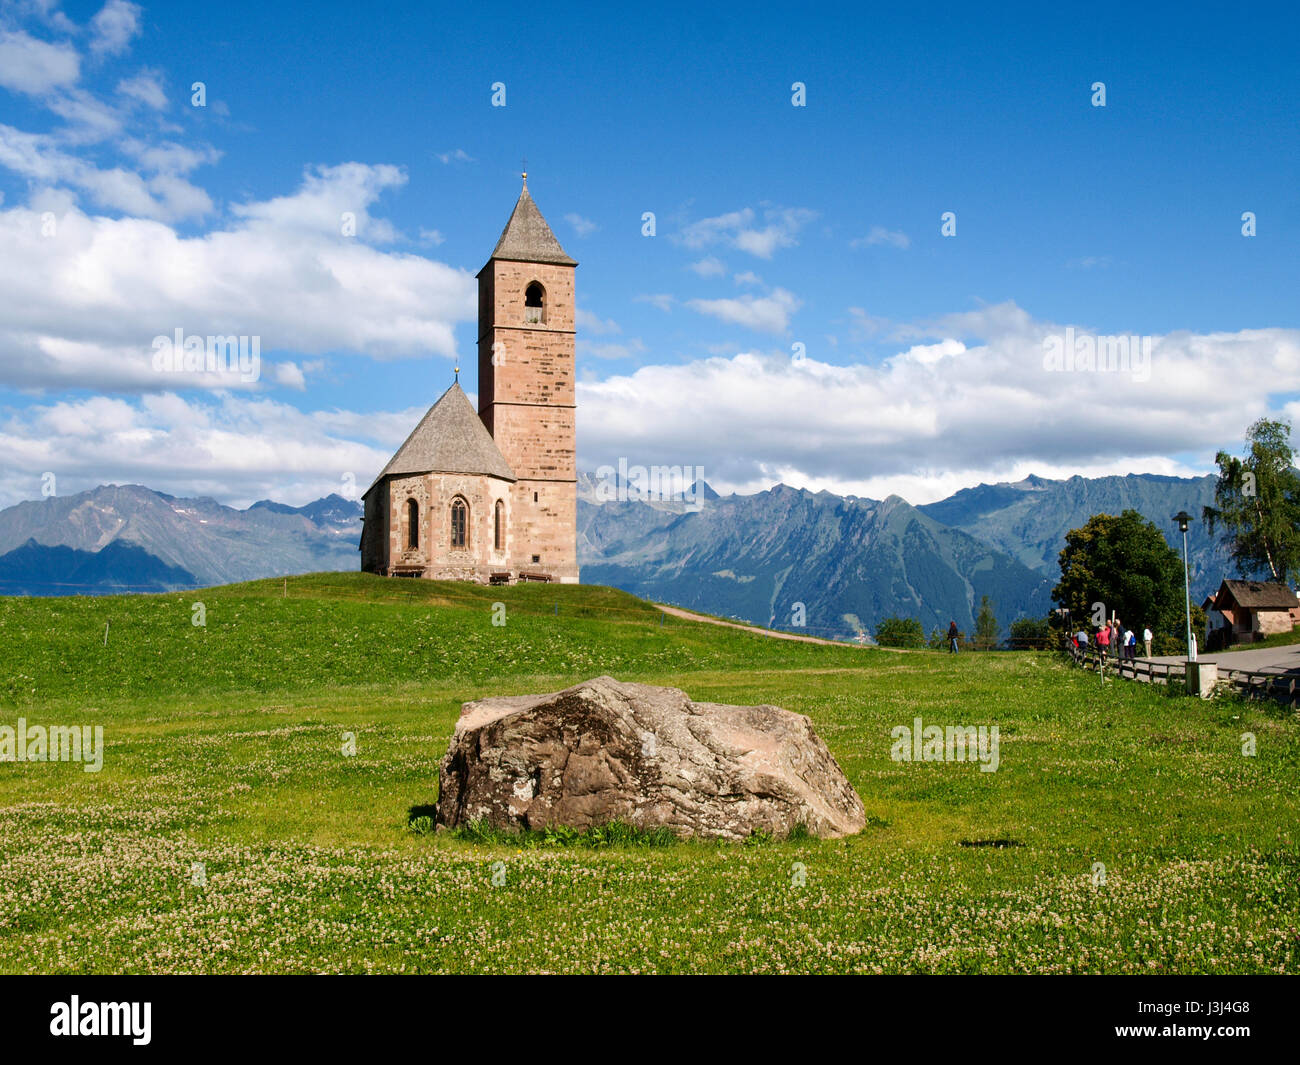 Santa Caterina, Italia - Luglio 17, 2016: la chiesa di Santa Caterina sulla montagna di Merano Foto Stock